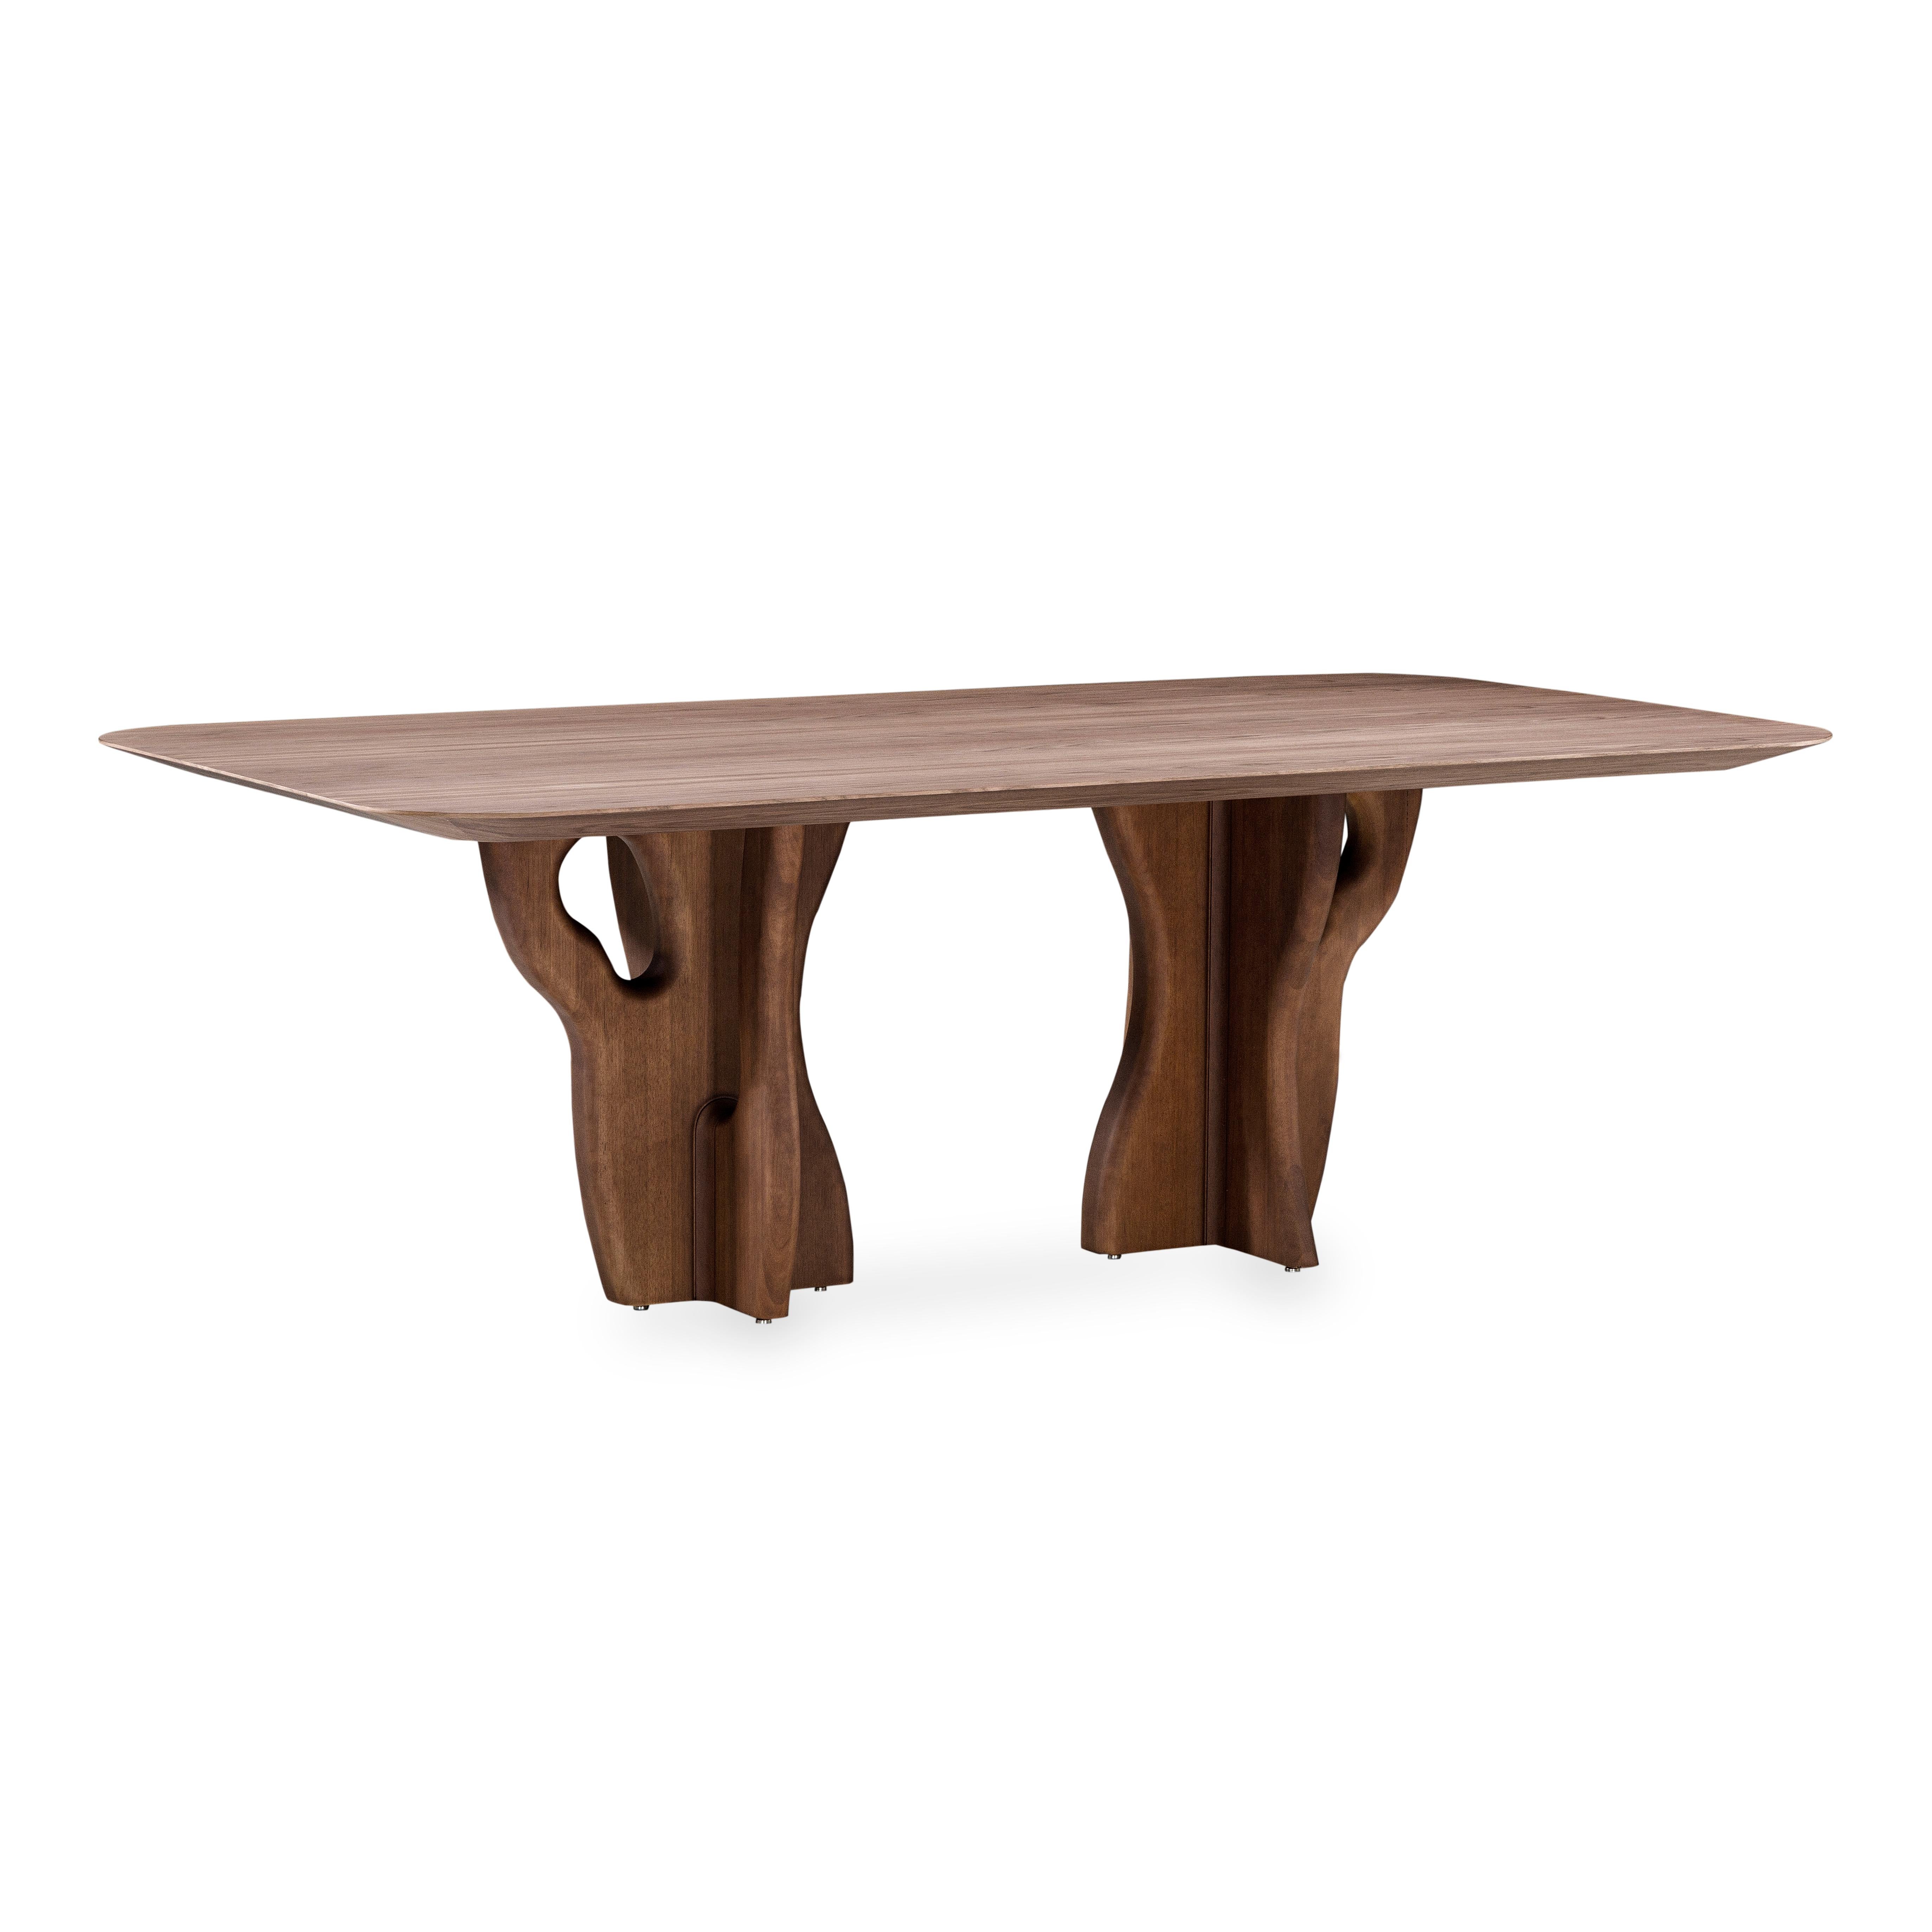 Das Uultis Design Team hat den Suma Esstisch mit einer Platte aus Walnussfurnier und Beinen aus organischem Massivholz gefertigt, perfekt für Ihren Traum-Essbereich. Dieses Möbelstück ist für Mahlzeiten und Zusammenkünfte gedacht und passt perfekt